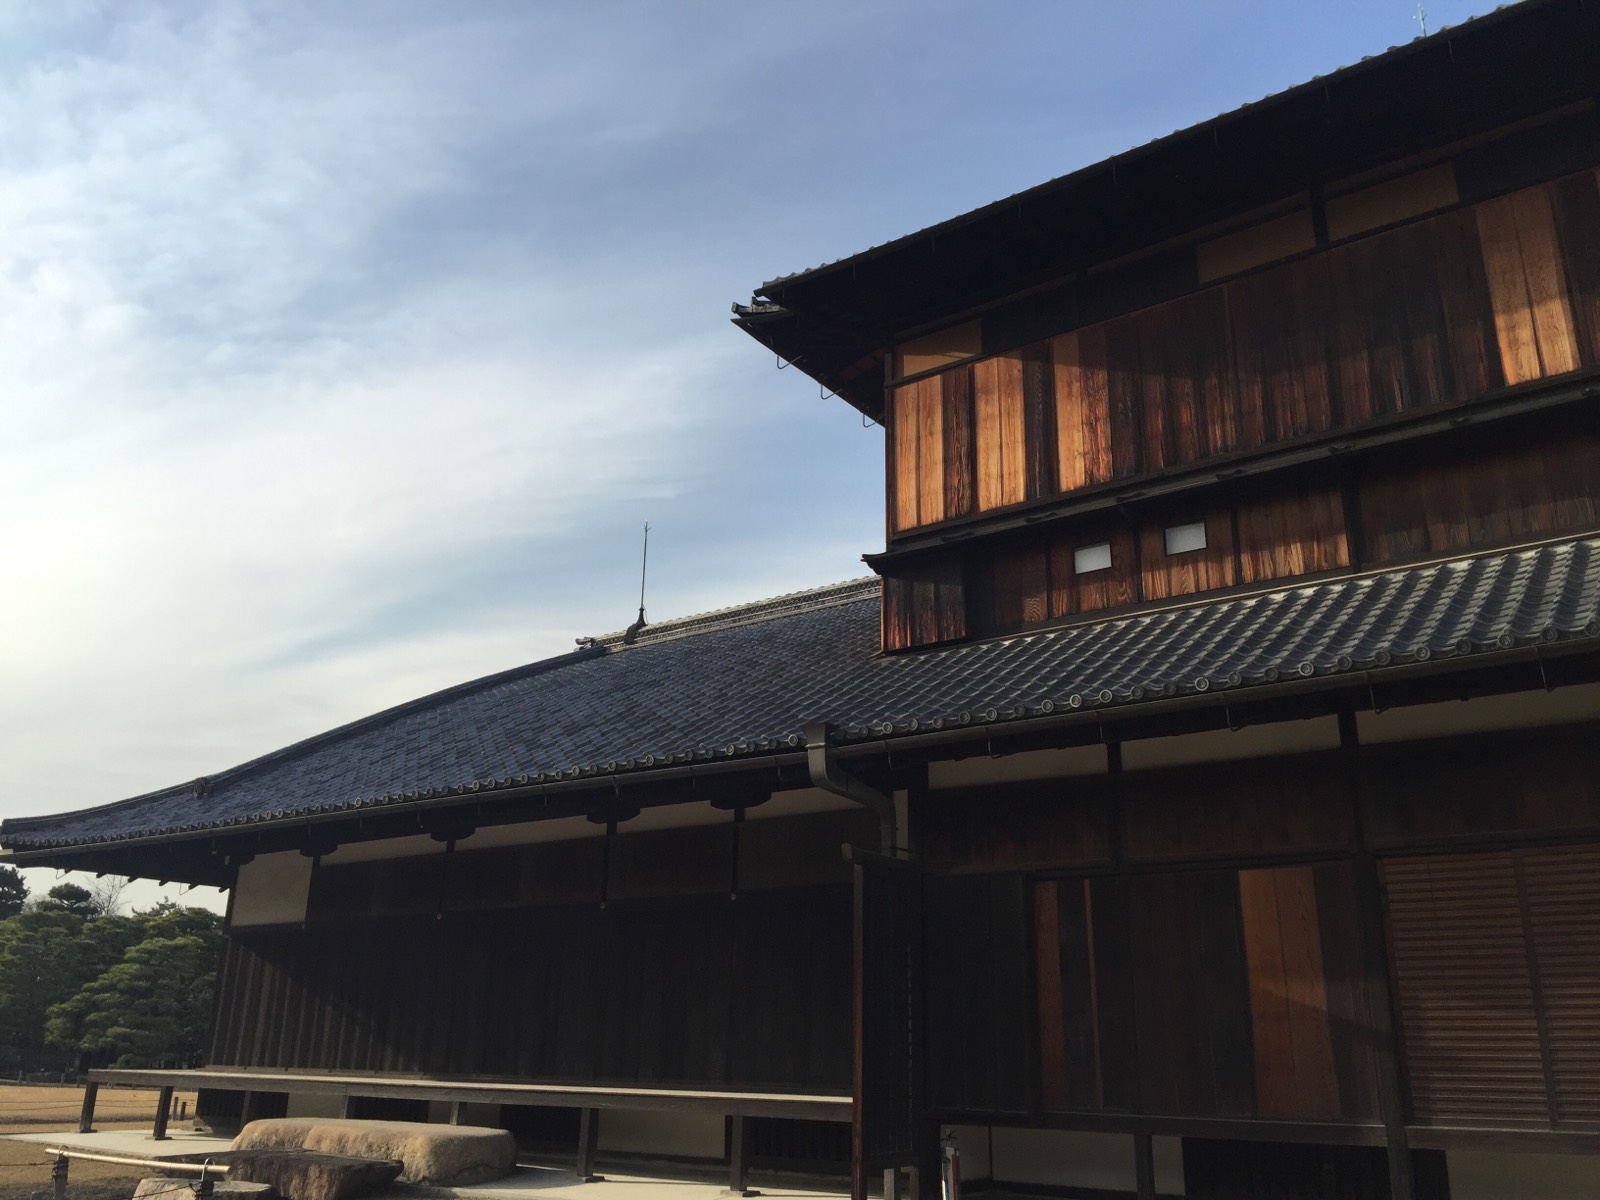 很有江户时期的气息，很有特点的一个地方，对历史不太懂，但是感觉非常美。